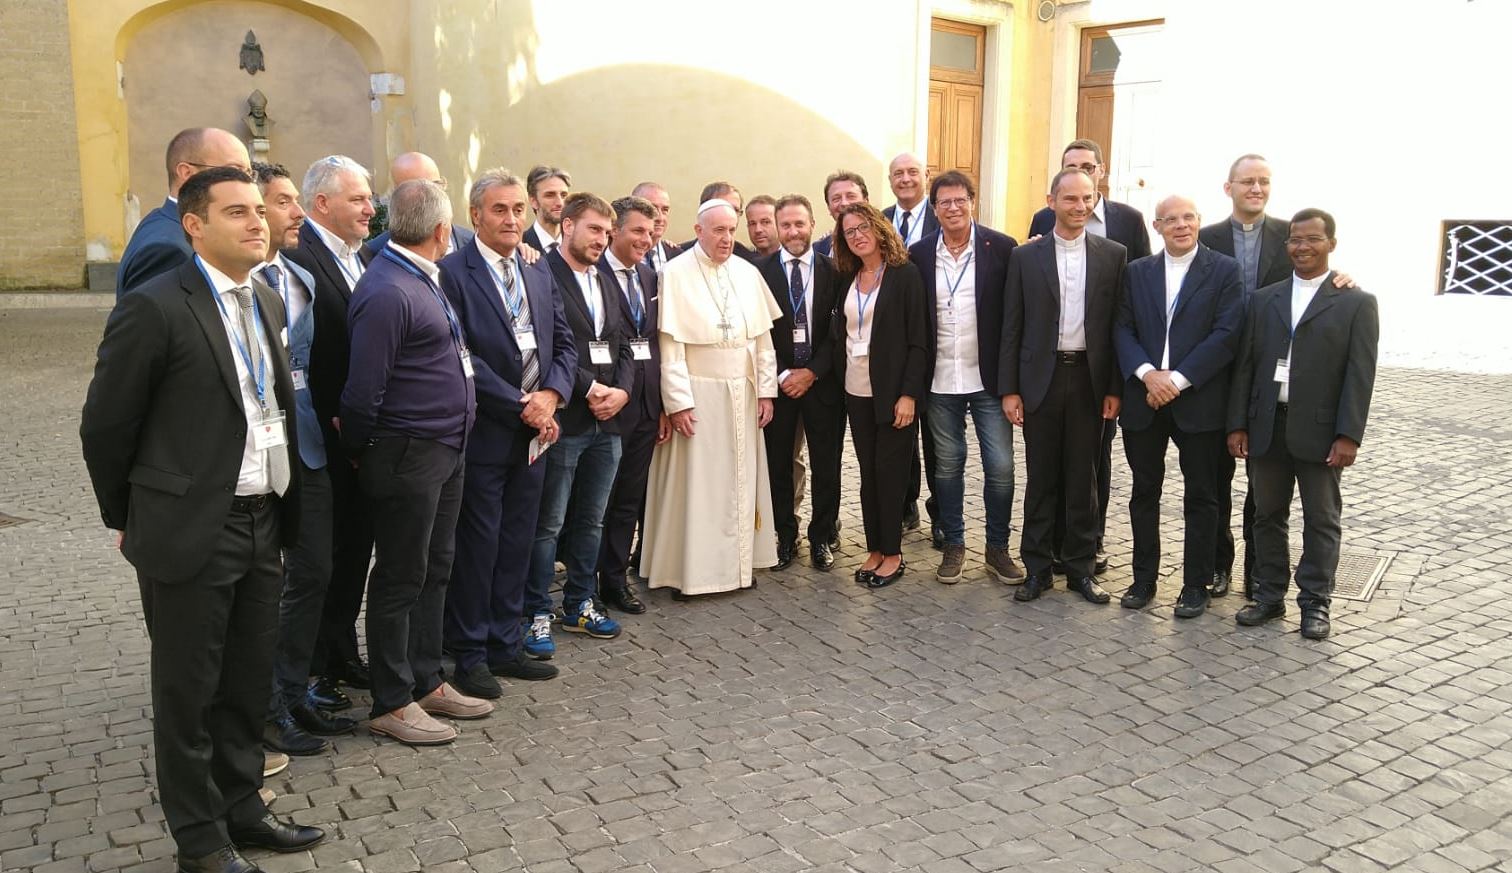 "Campioni nel cuore", una delegazione ligure incontra Papa Francesco